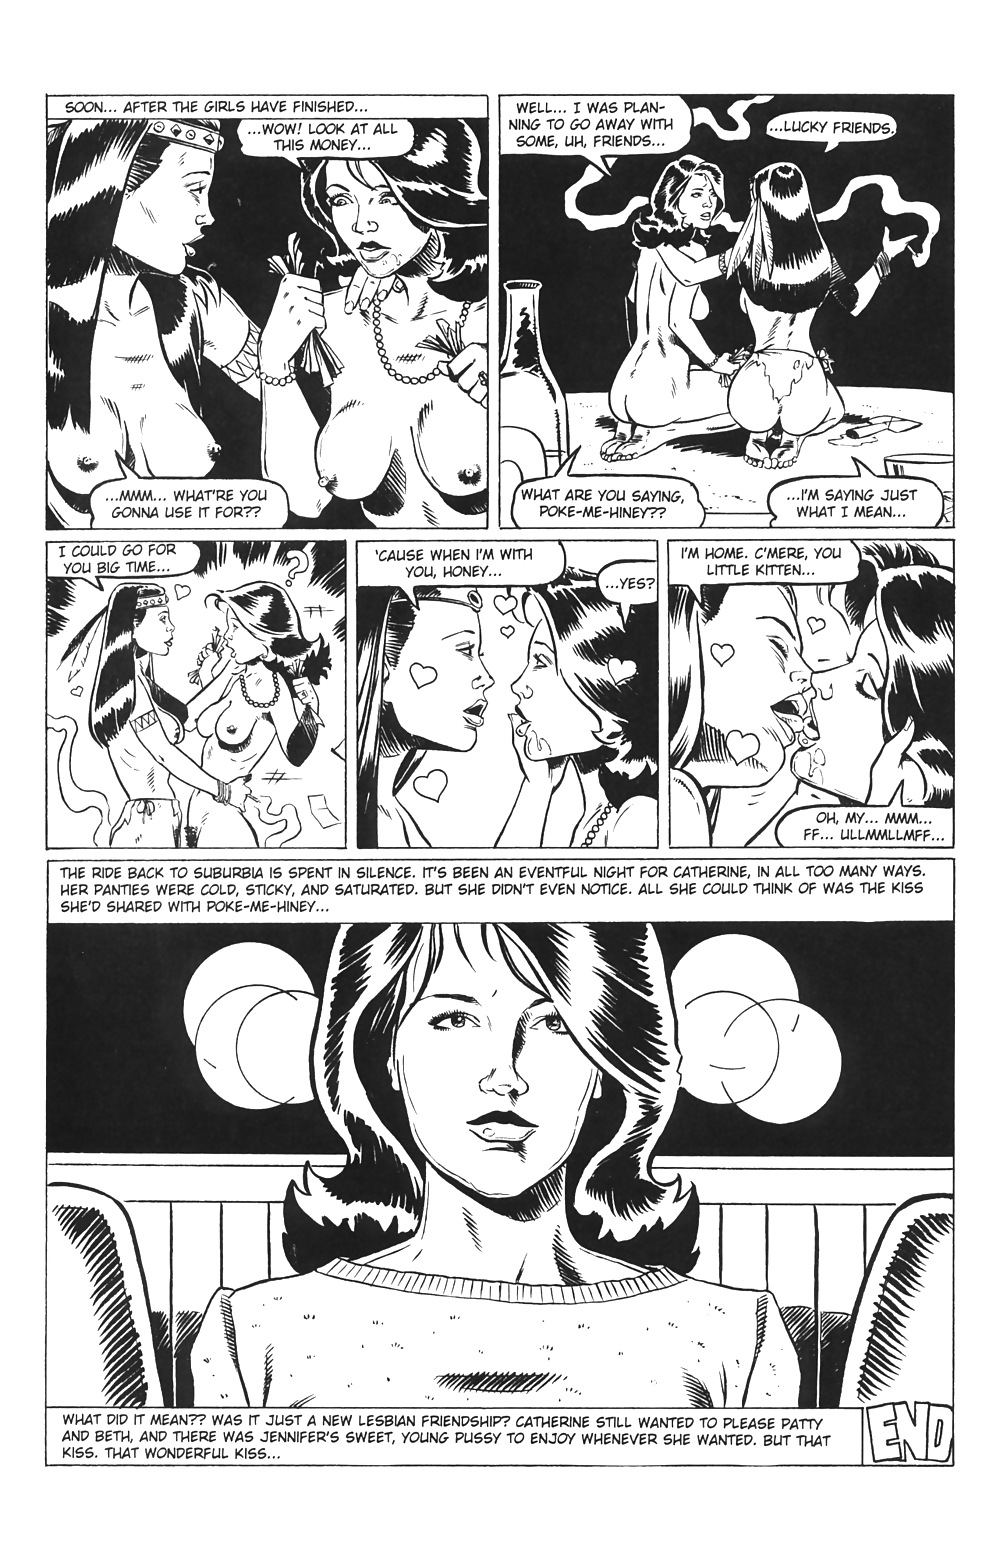 Hausfrauen Am Spiel # 03 - Eros-Comics Von Rebecca - Oktober 2001 #25714072